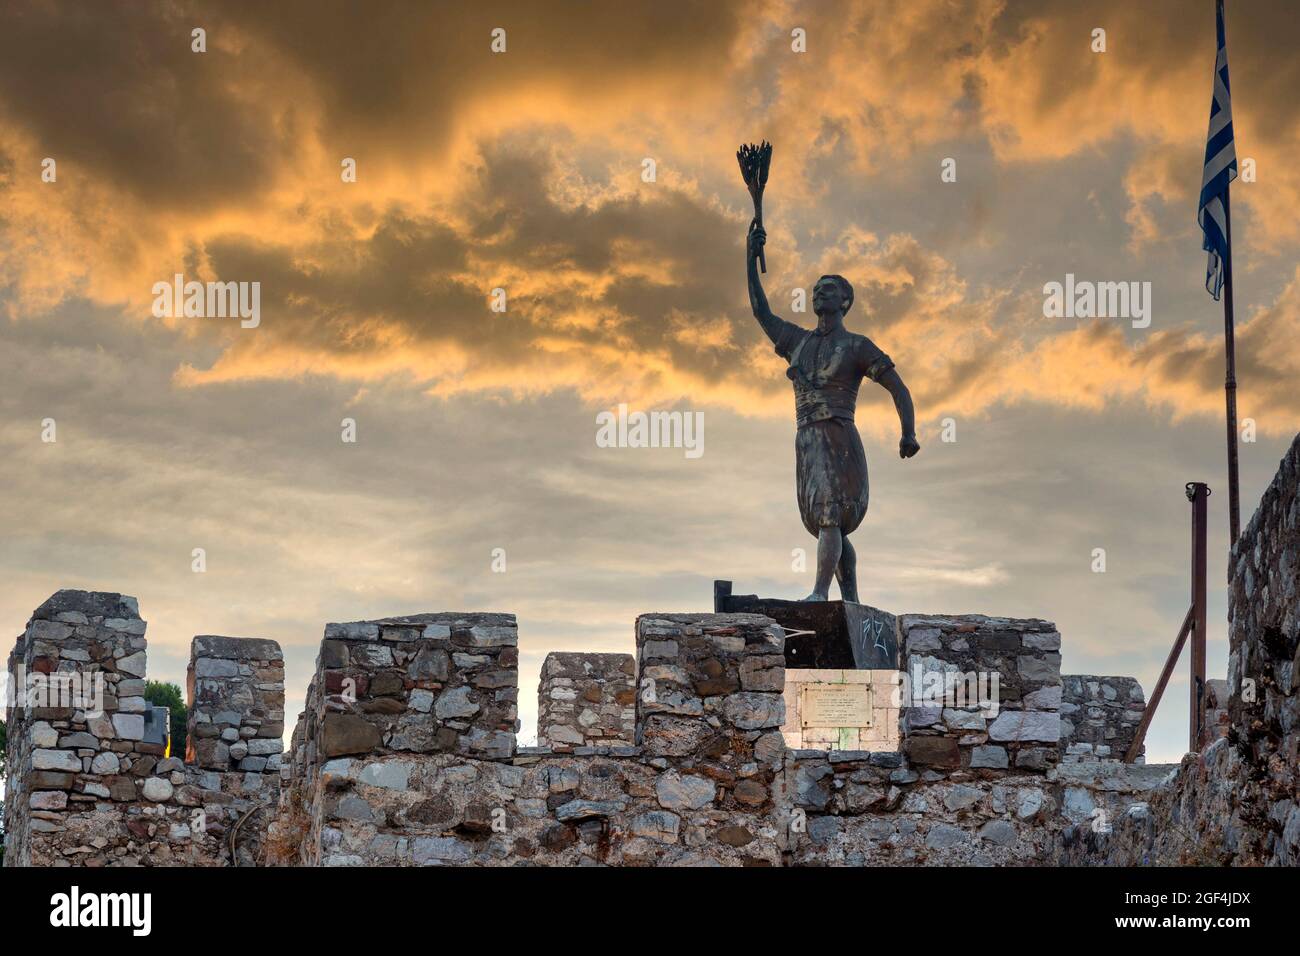 Statua di Georgios Anemogiannis, un eroe della guerra d'indipendenza greca (1821), nella città di Nafpaktos, nella regione di ETOLOAKARNANIA, Grecia, Europa. Foto Stock